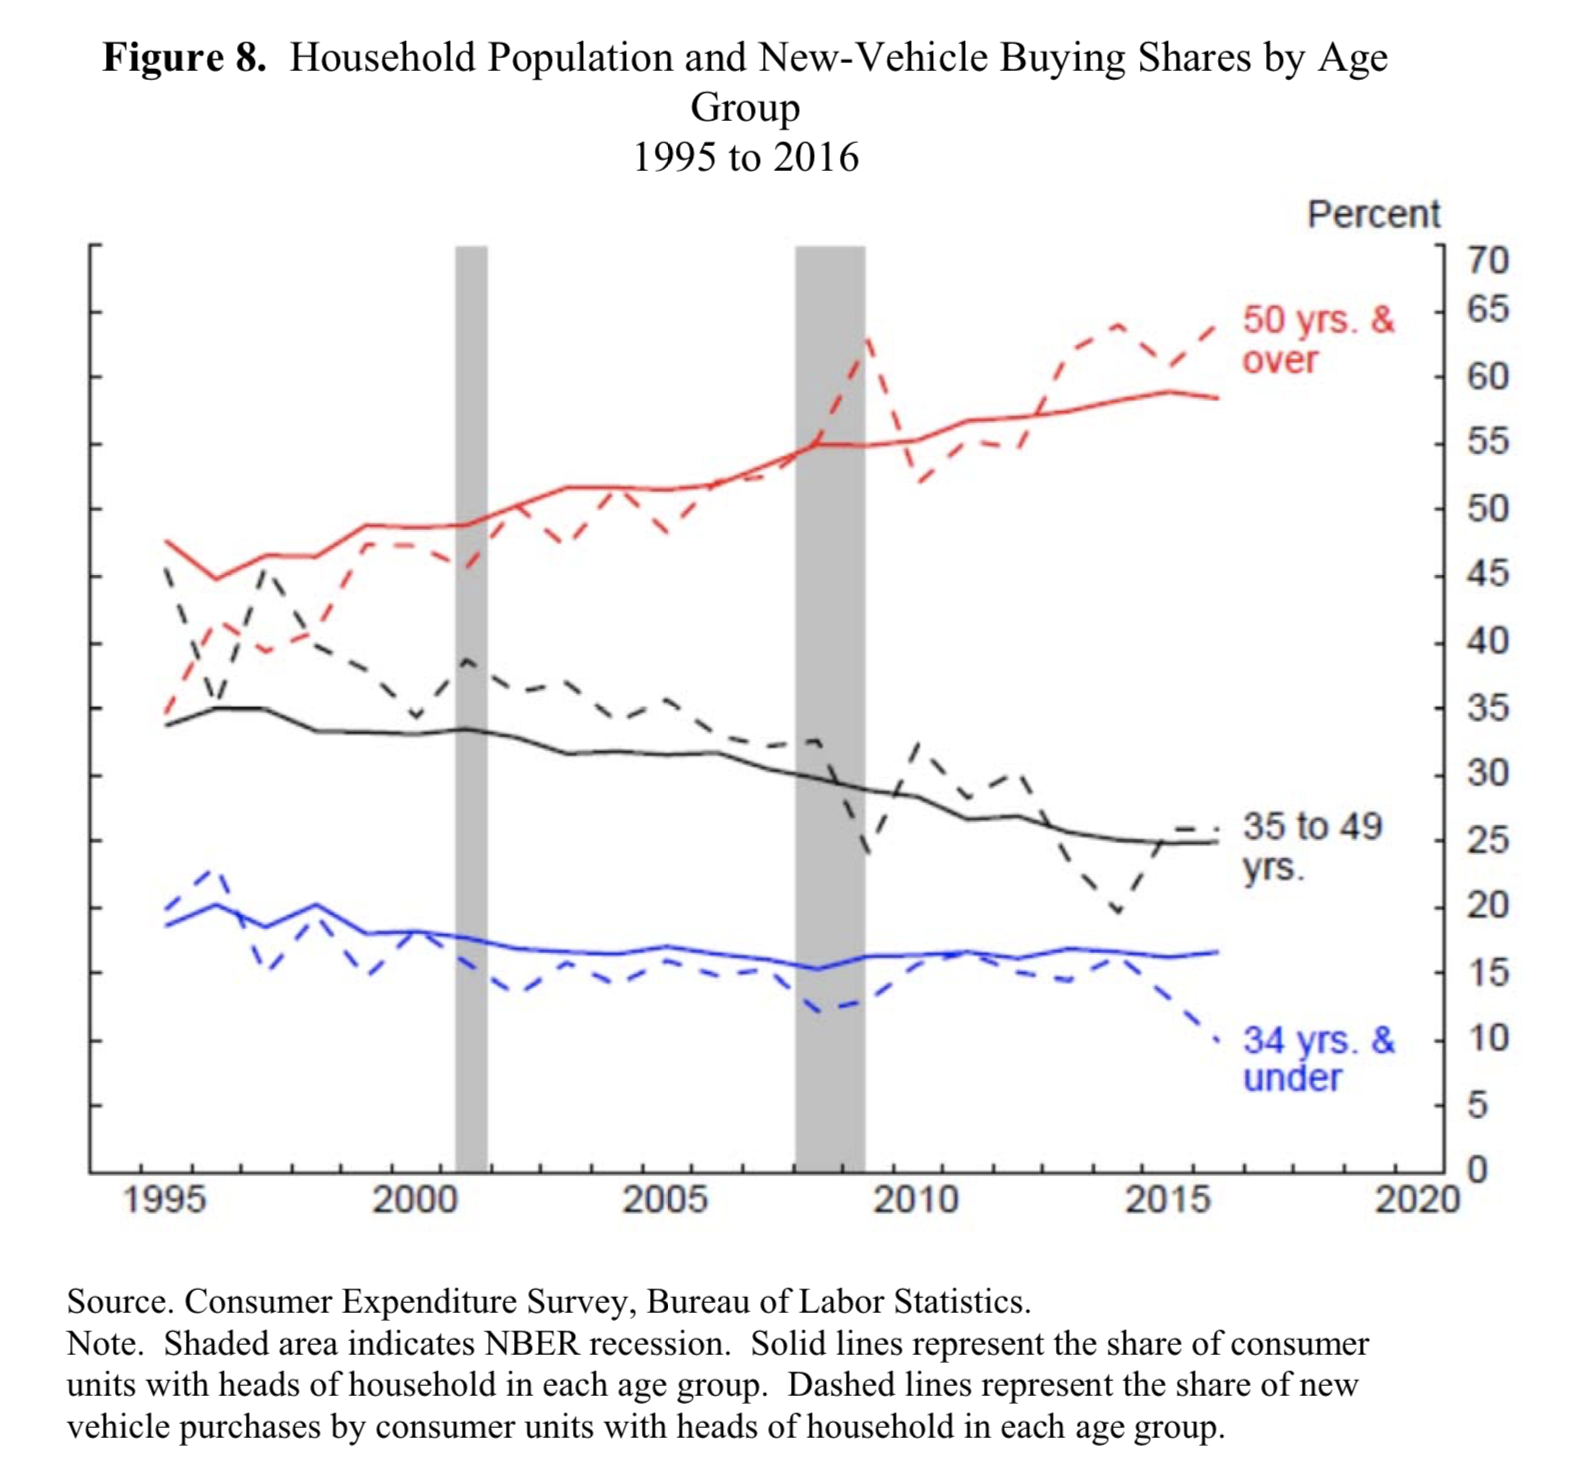 千禧世代消費習慣和過去不一樣了嗎？美聯儲數據顯示：沒啥大不同，美國年輕人只是更窮了而已！_(10).png